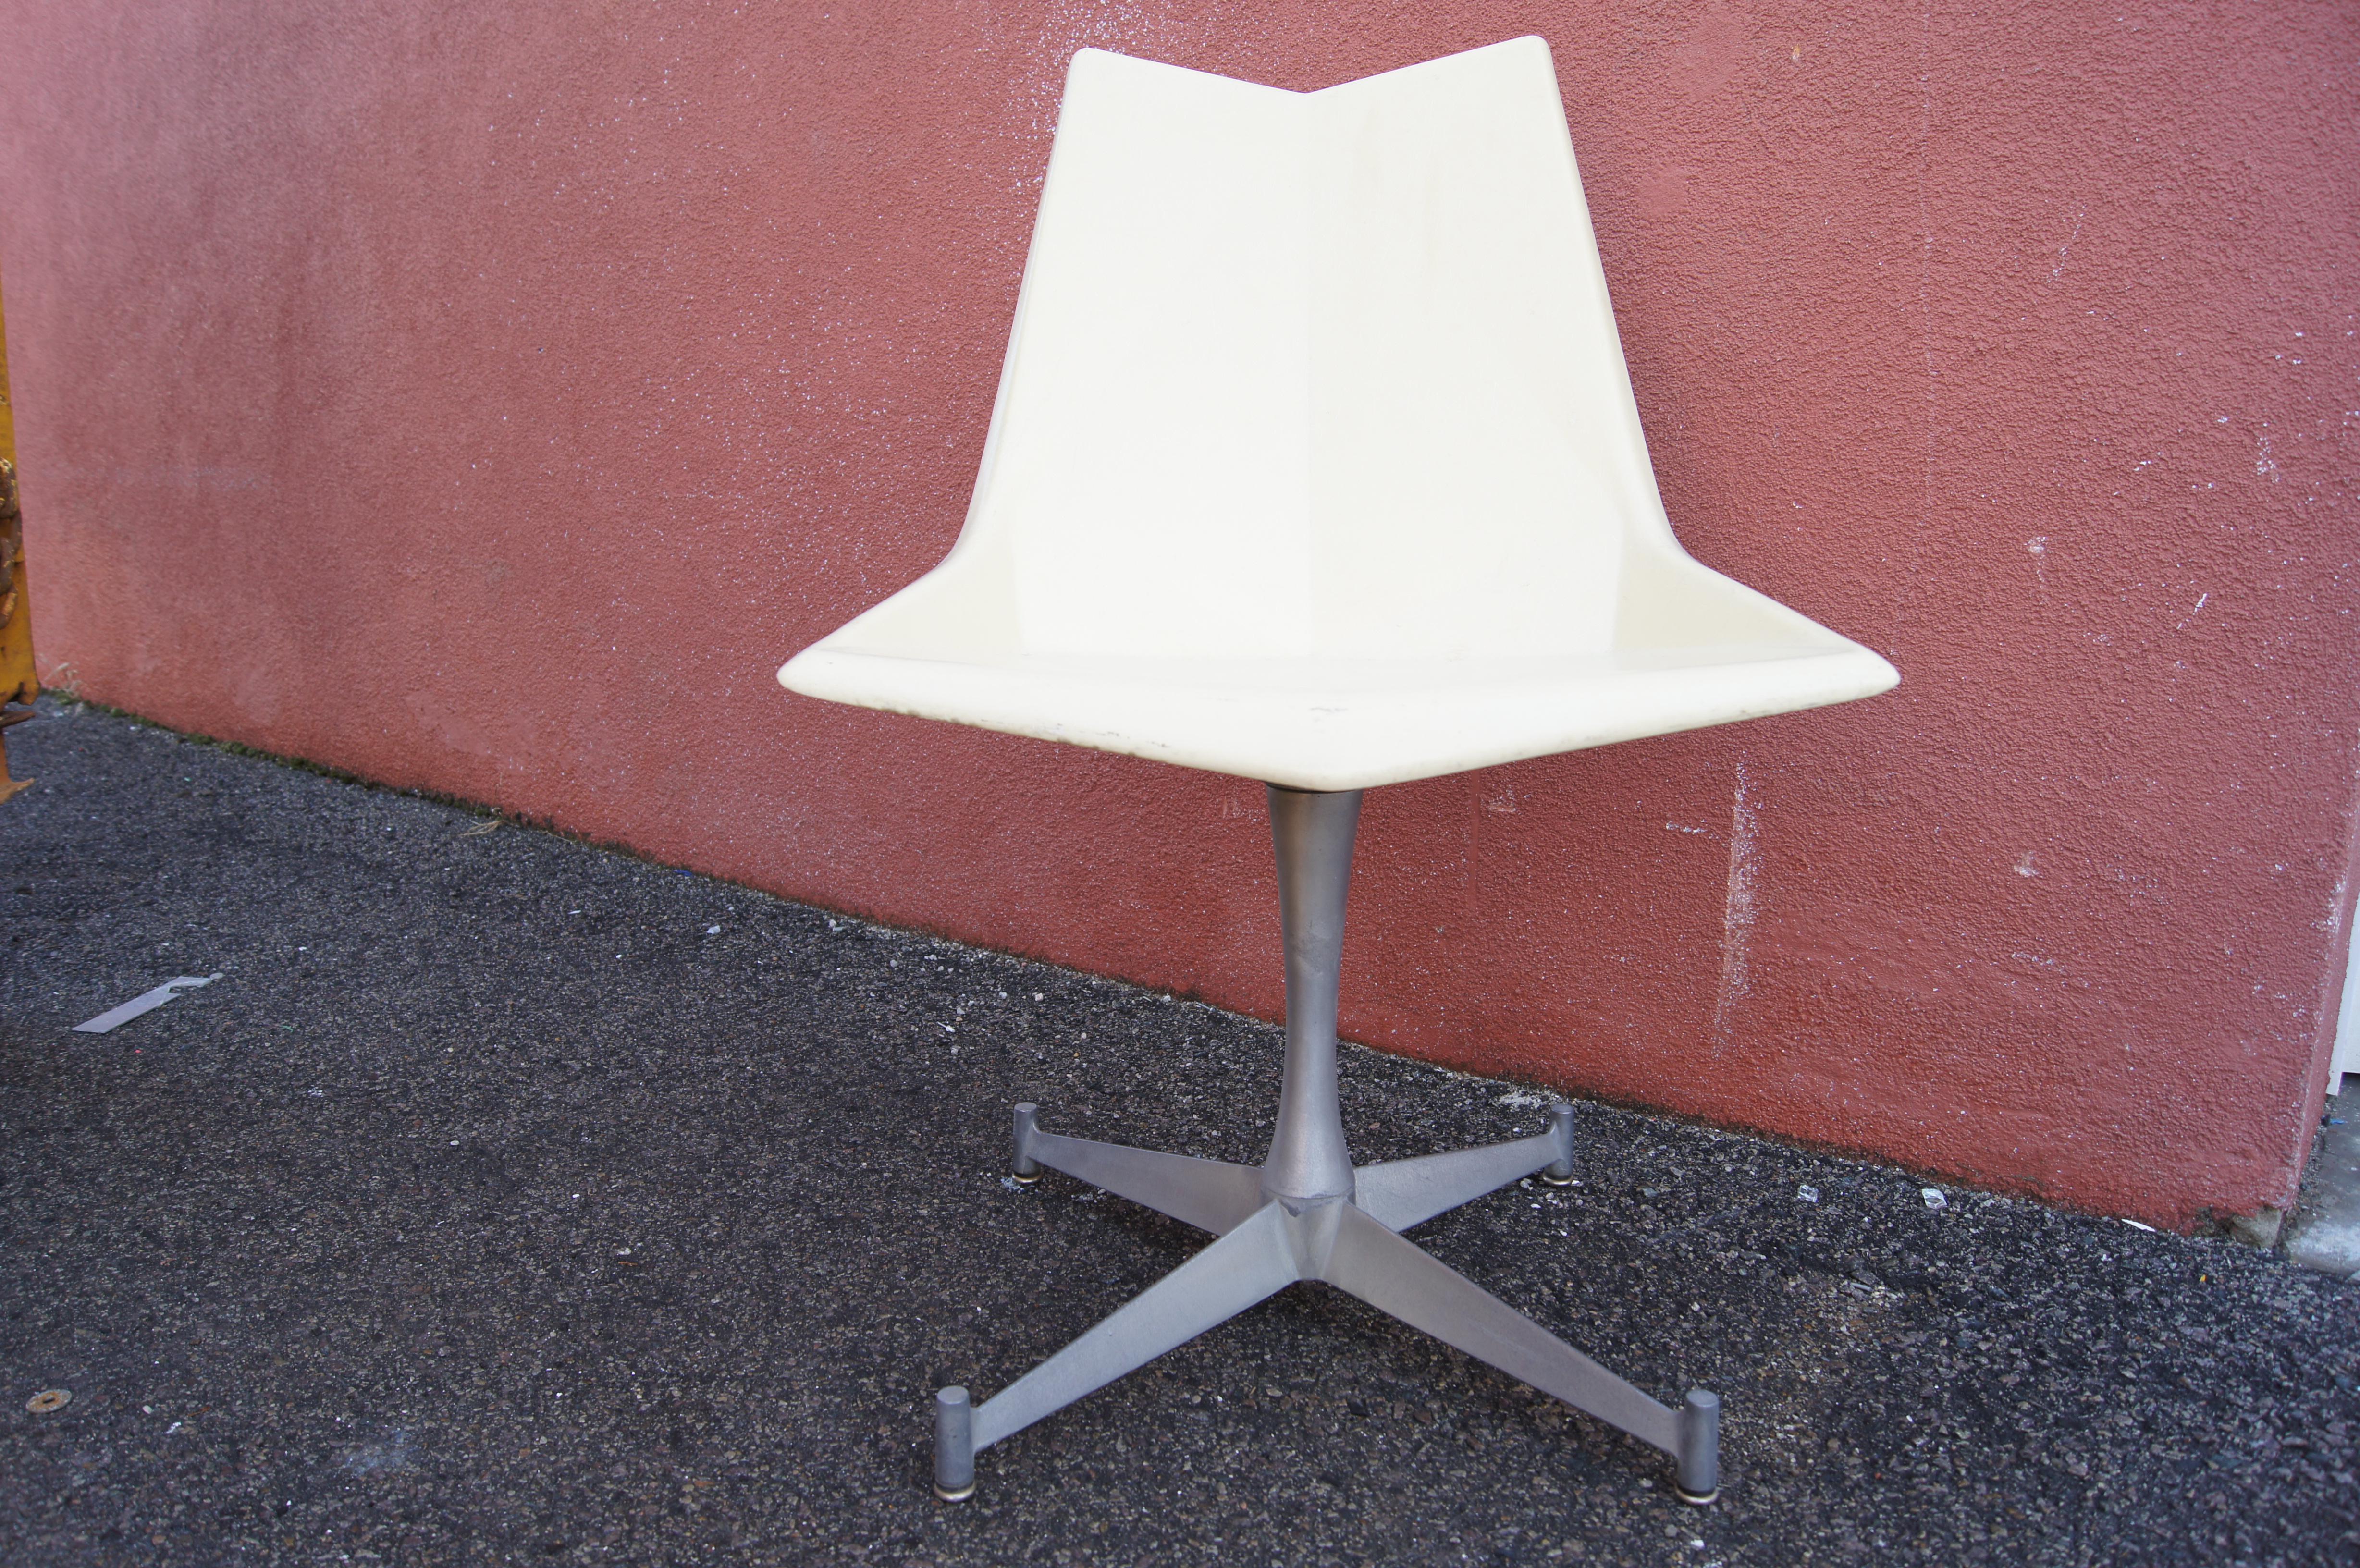 Conçu en 1959 sous le nom de Faceted form chair, le siège en fibre de verre de Paul McCobb est désormais connu sous le nom de Origami Chair, ses facettes moulées rappelant l'art japonais du pliage du papier. Cette version blanc cassé de sa chaise